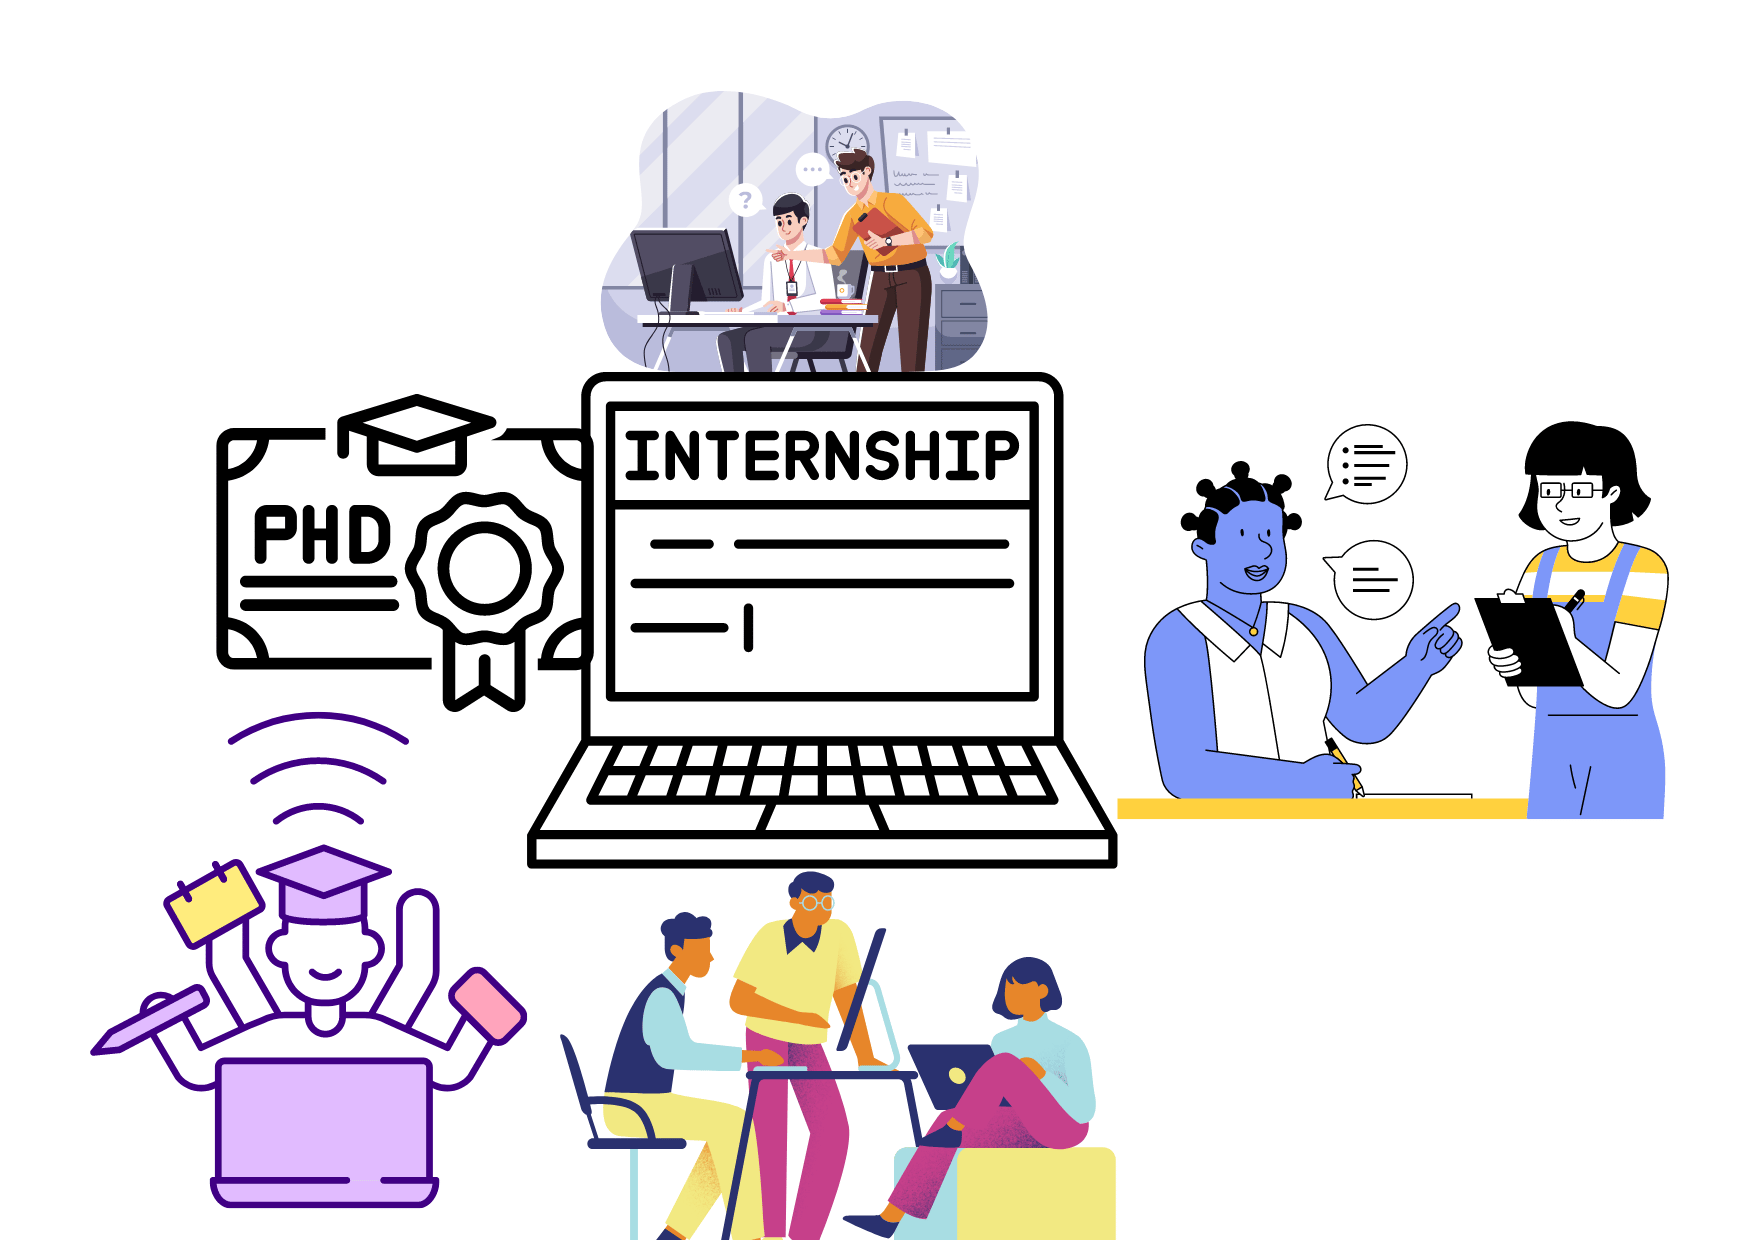 phd student internships